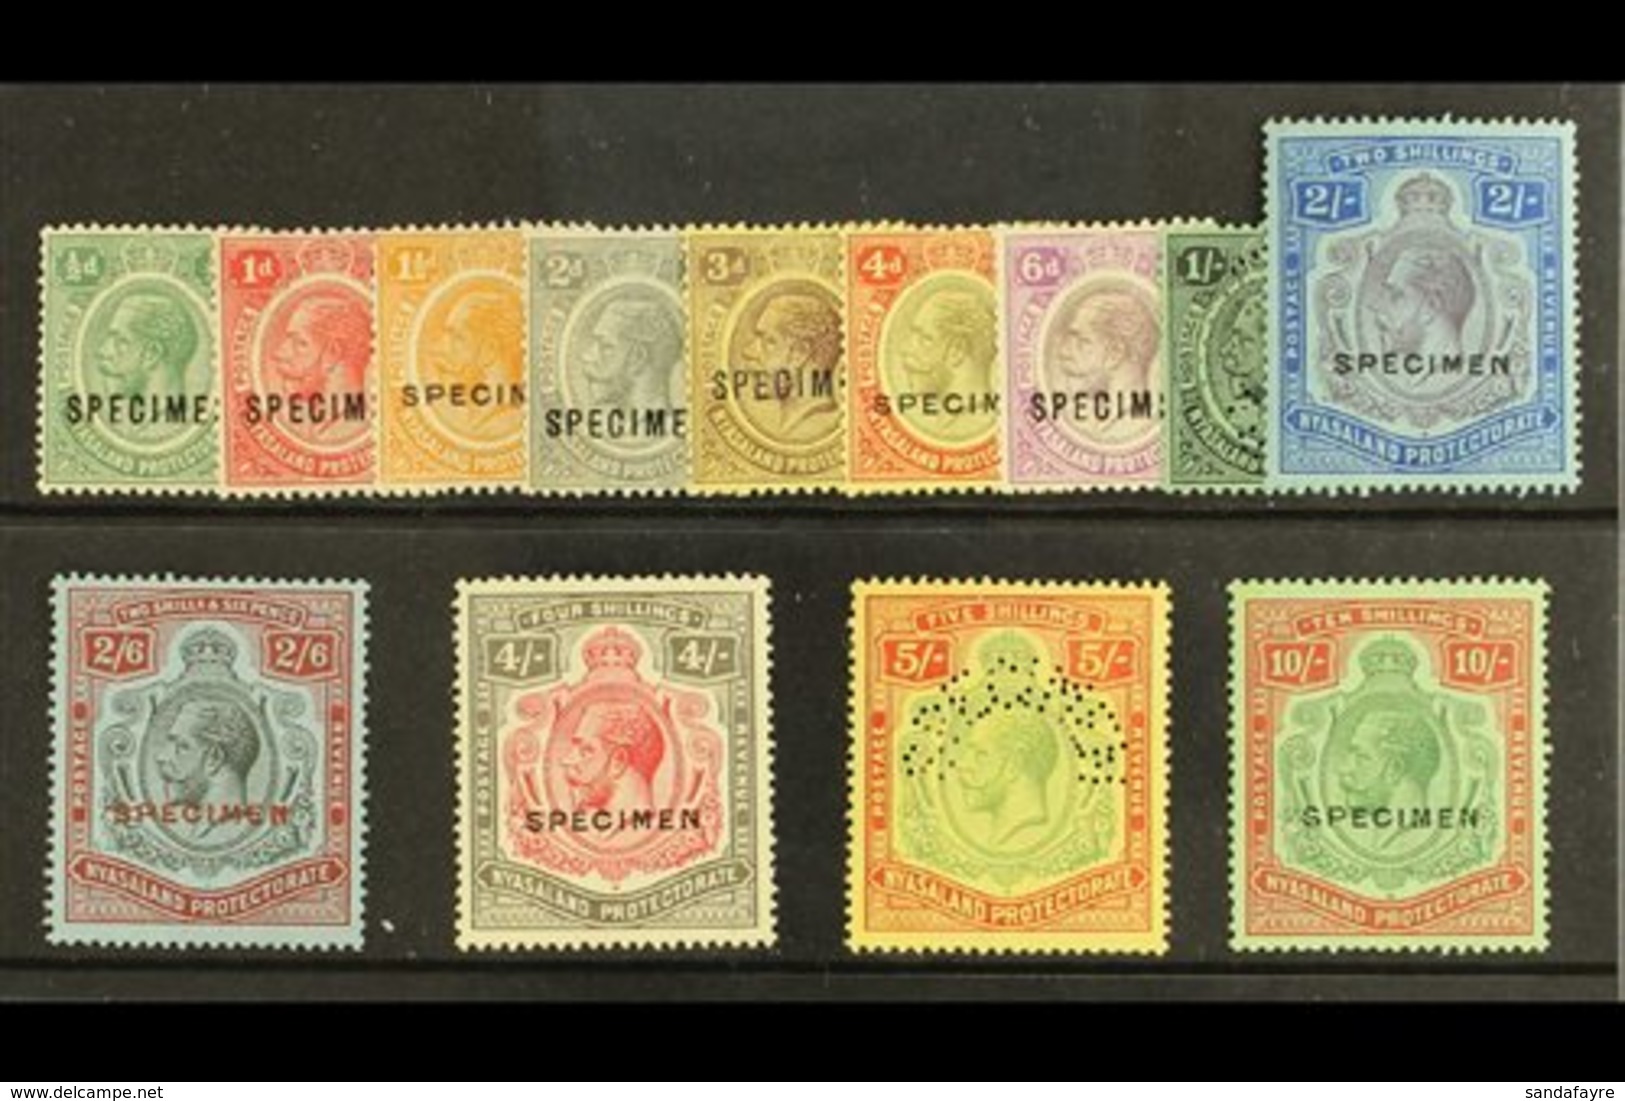 \Y 1921\Y Geo V Complete Set To 10s, Wmk Script CA, Overprinted "Specimen", SG 100/13, Very Fine Mint. (13 Stamps) For M - Nyasaland (1907-1953)